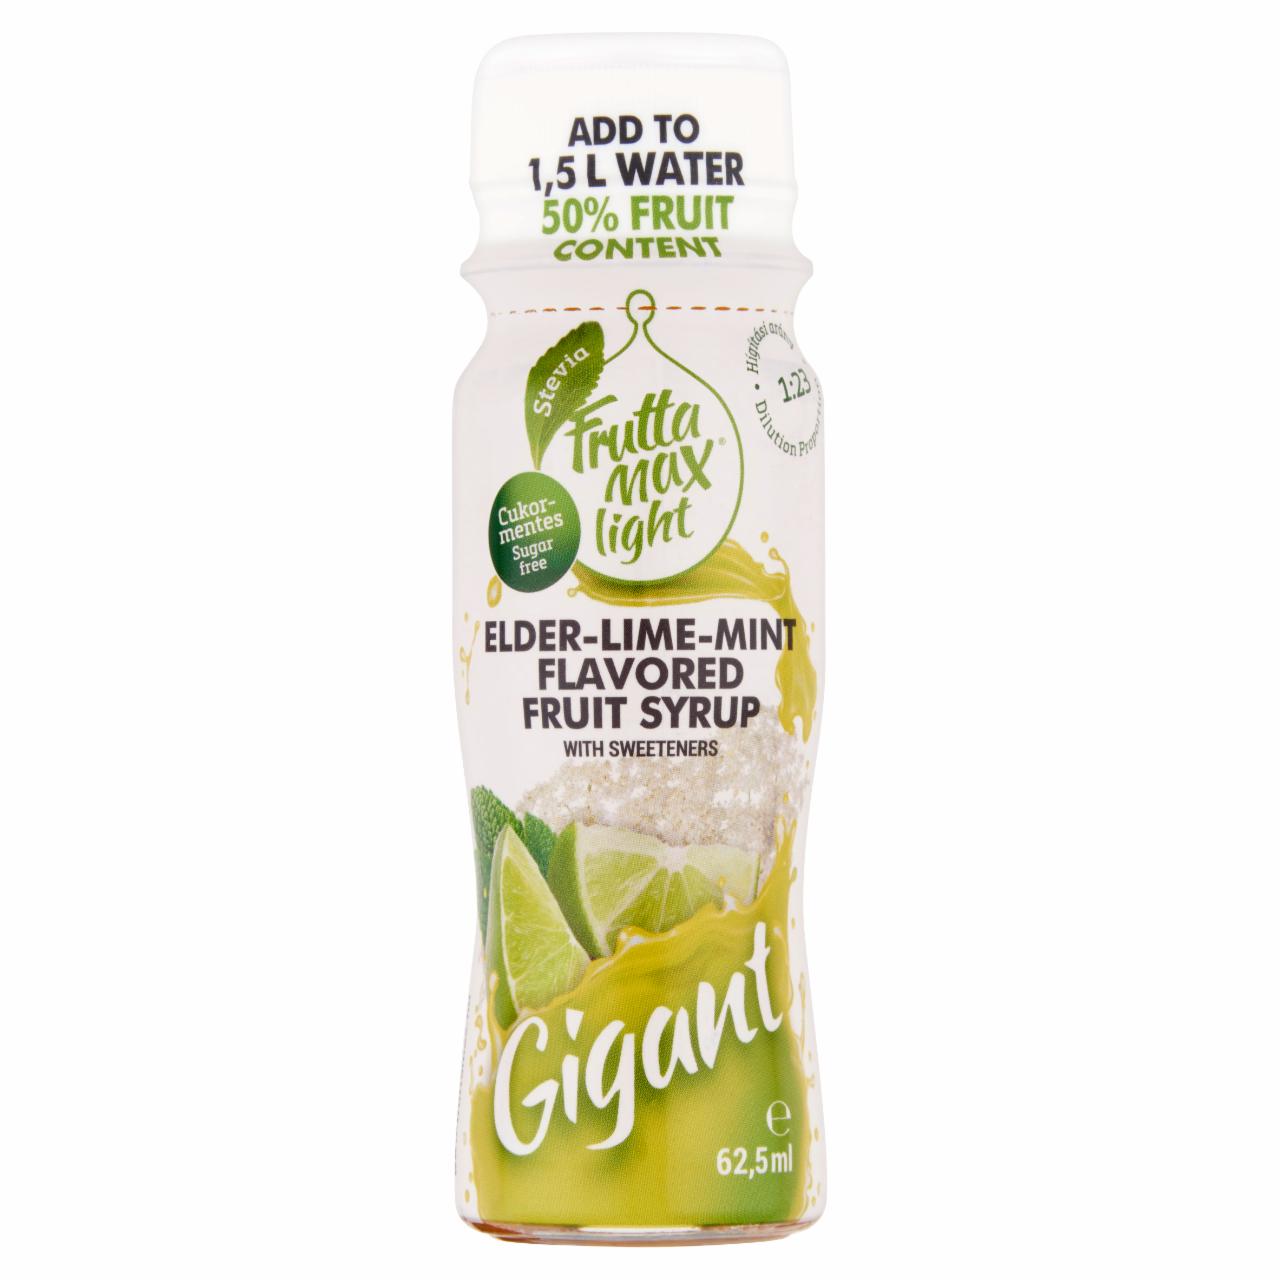 Képek - FruttaMax Gigant cukormentes bodza-lime-menta ízű gyümölcsszörp édesítőszerekkel 62,5 ml